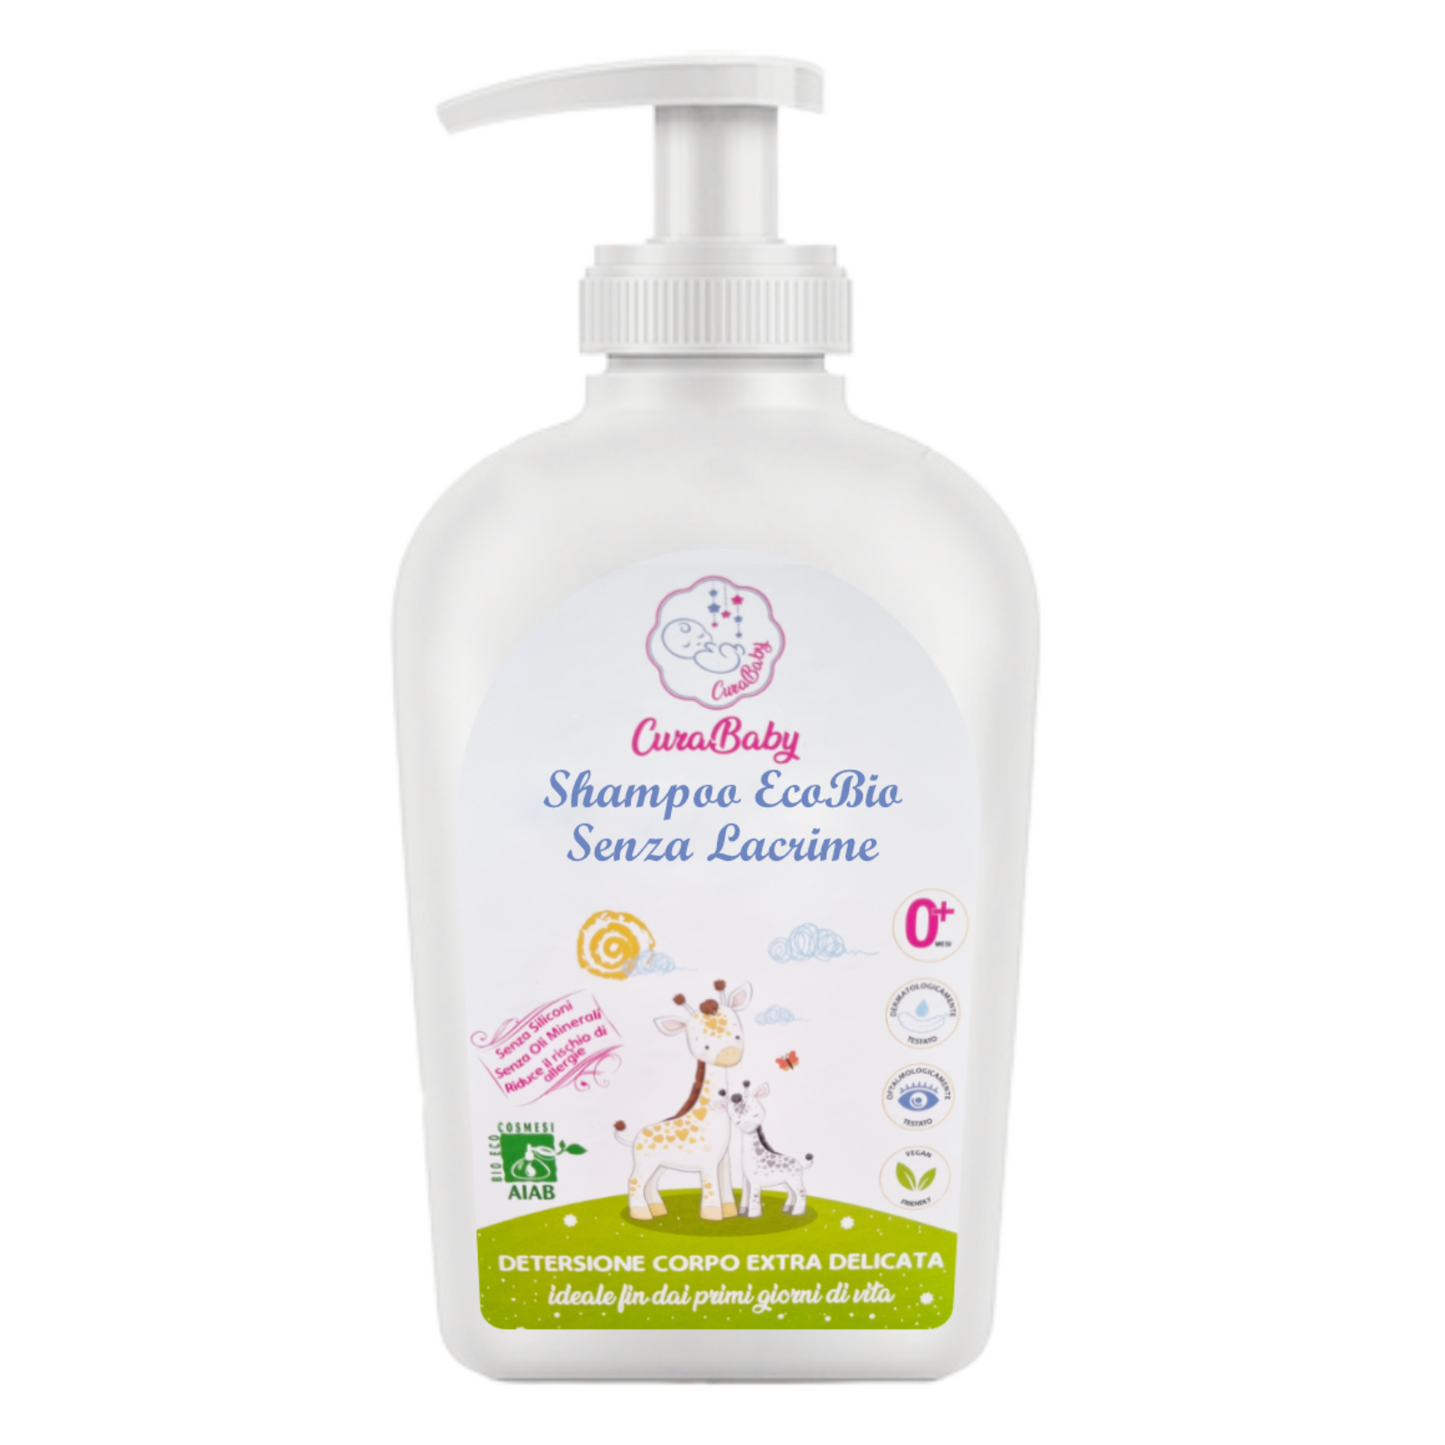 CuraBaby® Shampoo EcoBio Zero Lacrime 500ml